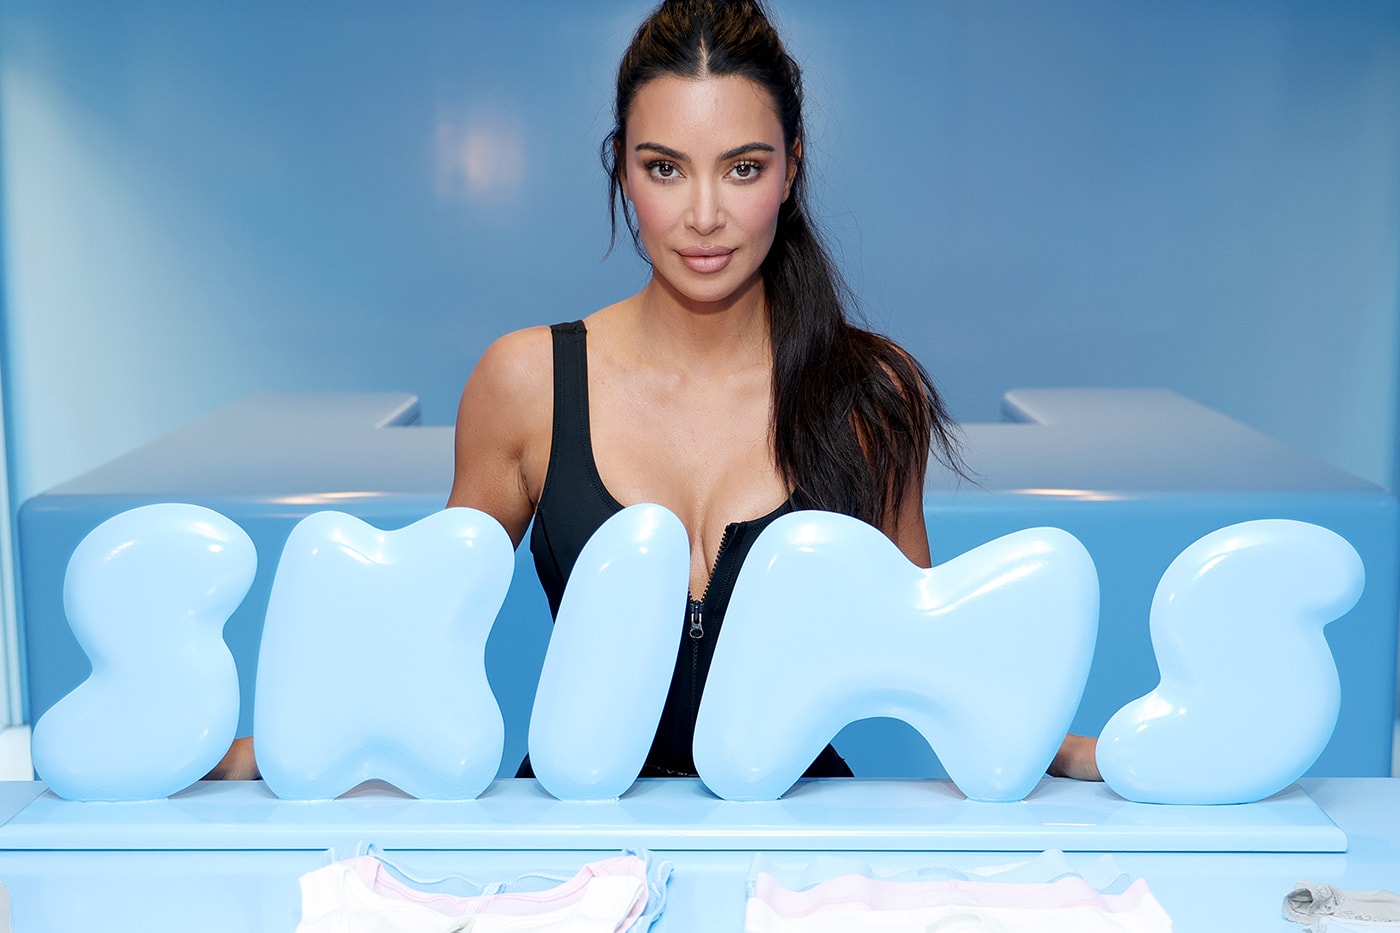 網友聲稱 Kim Kardashian 主理品牌 SKIMS 塑身衣從槍擊事件中拯救了她